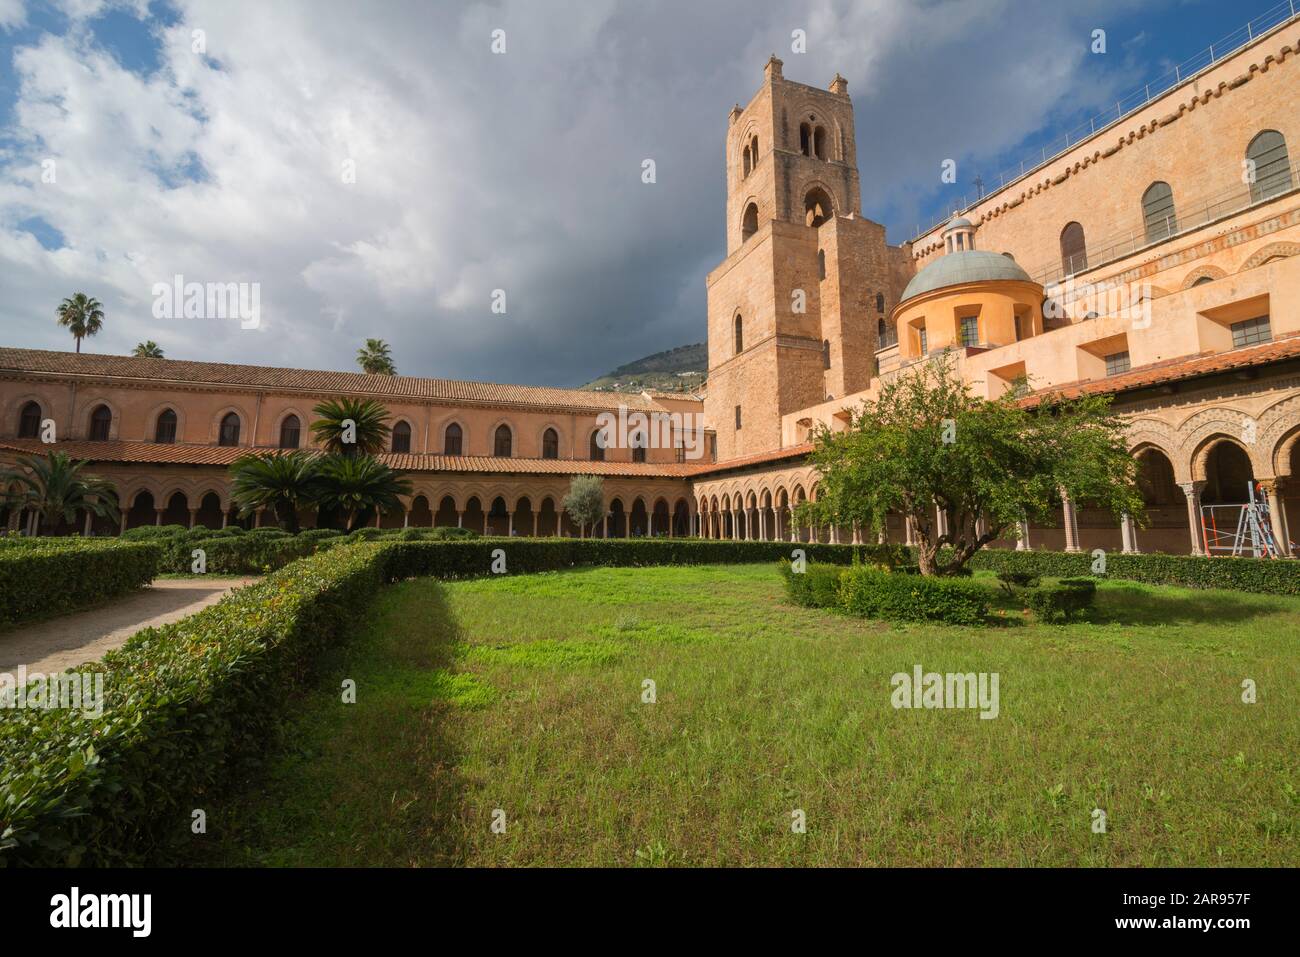 Cloître, Cathédrale de Monreale, Palerme, Palermo, Sicily, Italy, Europe Banque D'Images